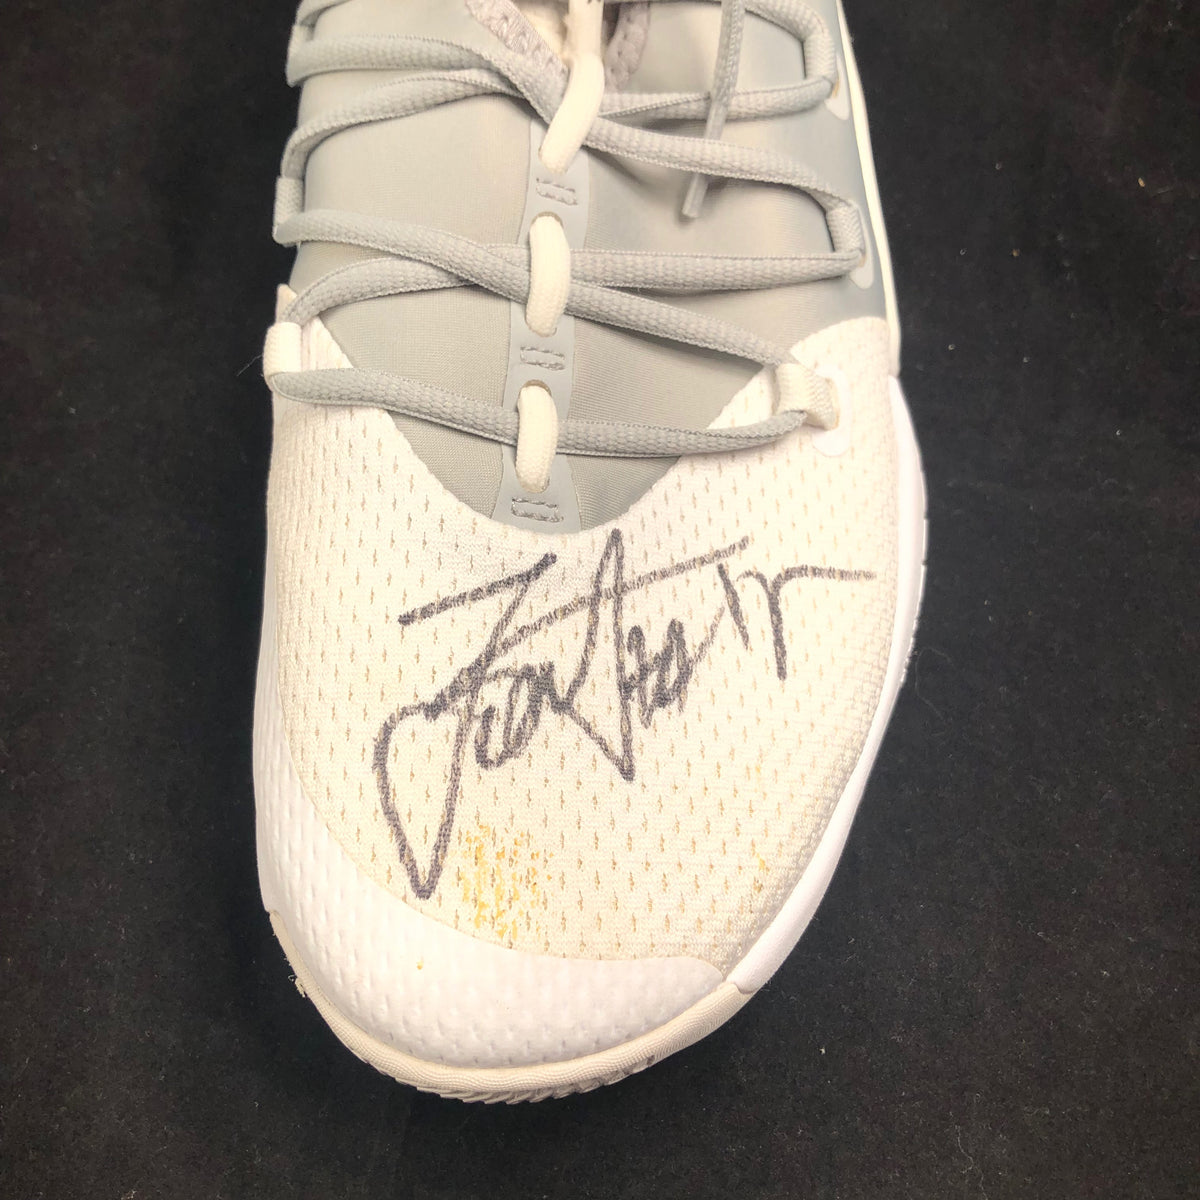  Nikola Jokic Autographed/Signed Pro Style Framed Nike